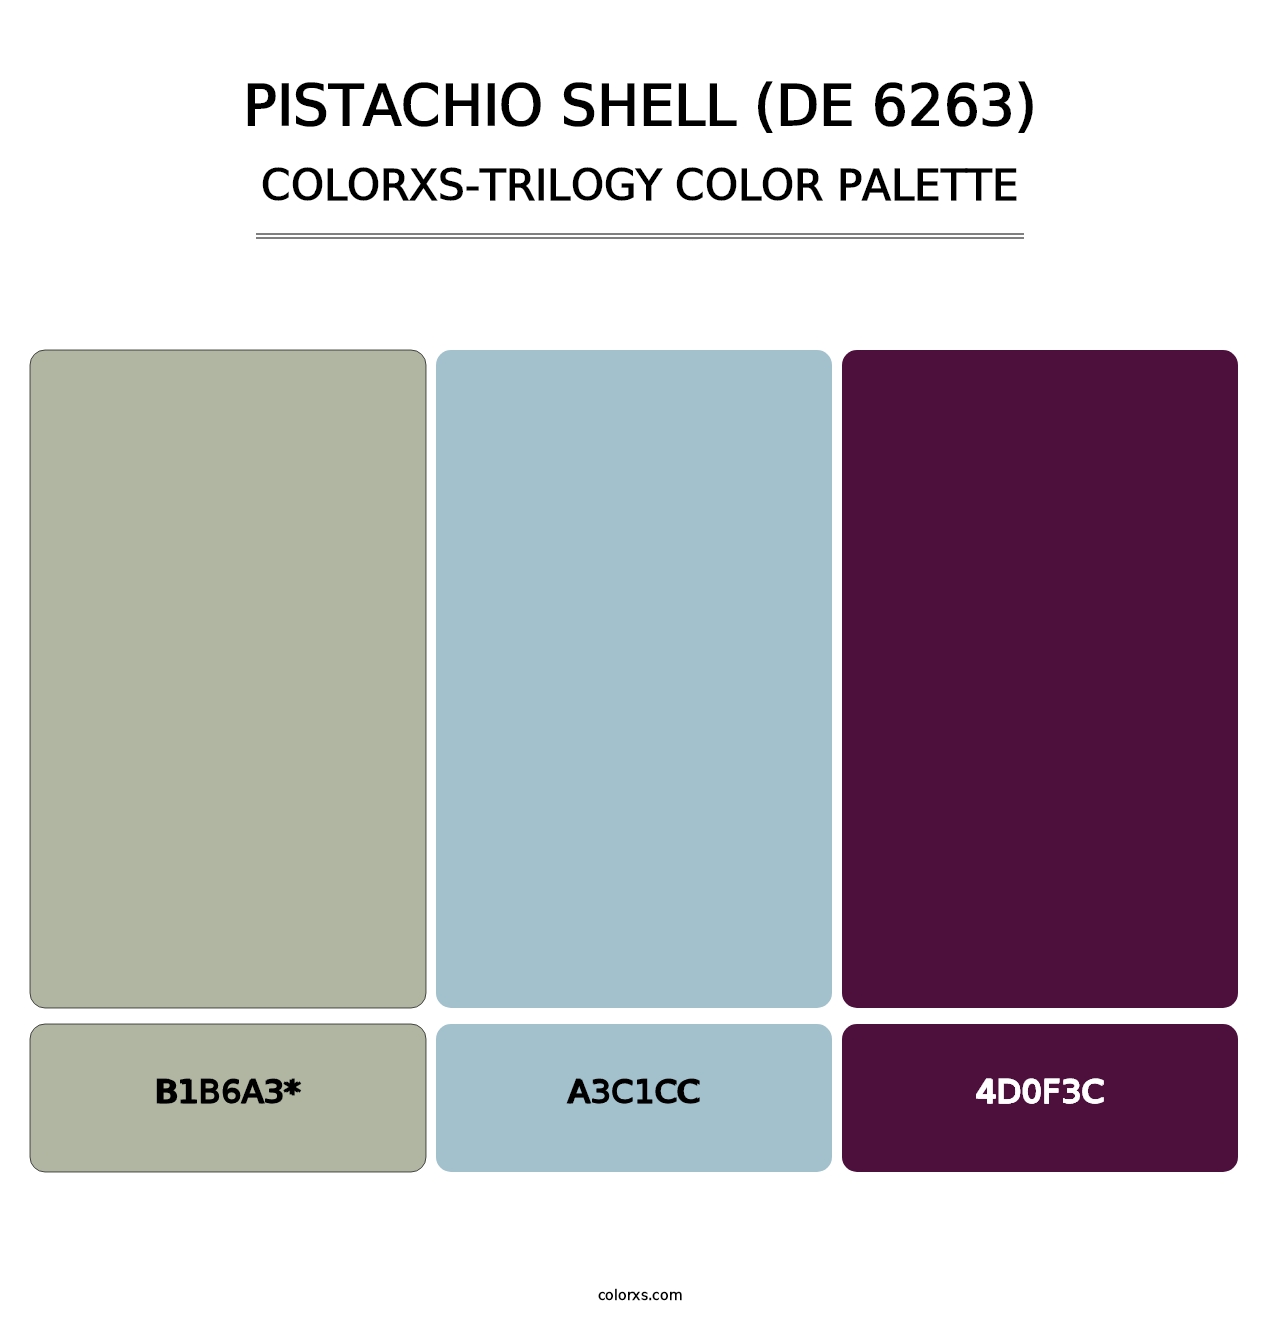 Pistachio Shell (DE 6263) - Colorxs Trilogy Palette